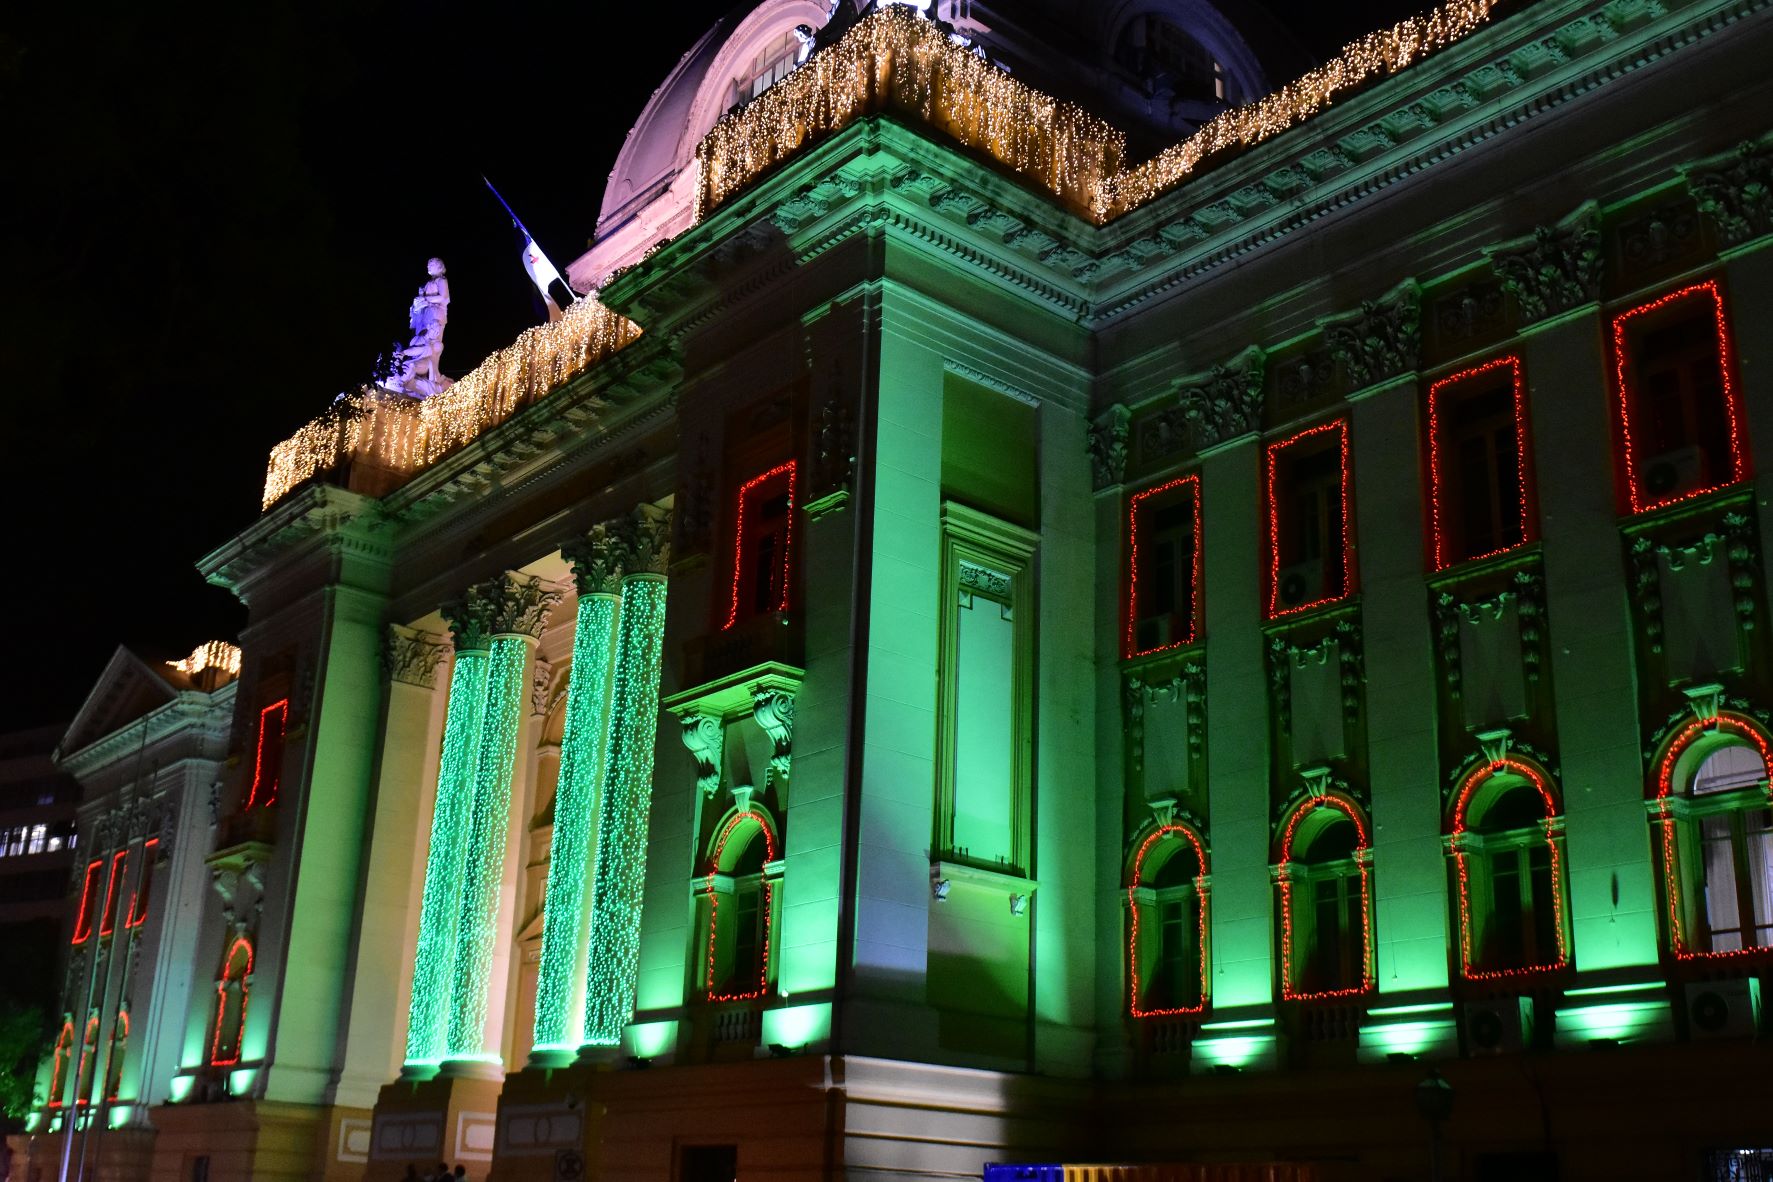 Fachada do Palácio da Justiça iluminada com luzes natalinas nas cores verde e vermelha